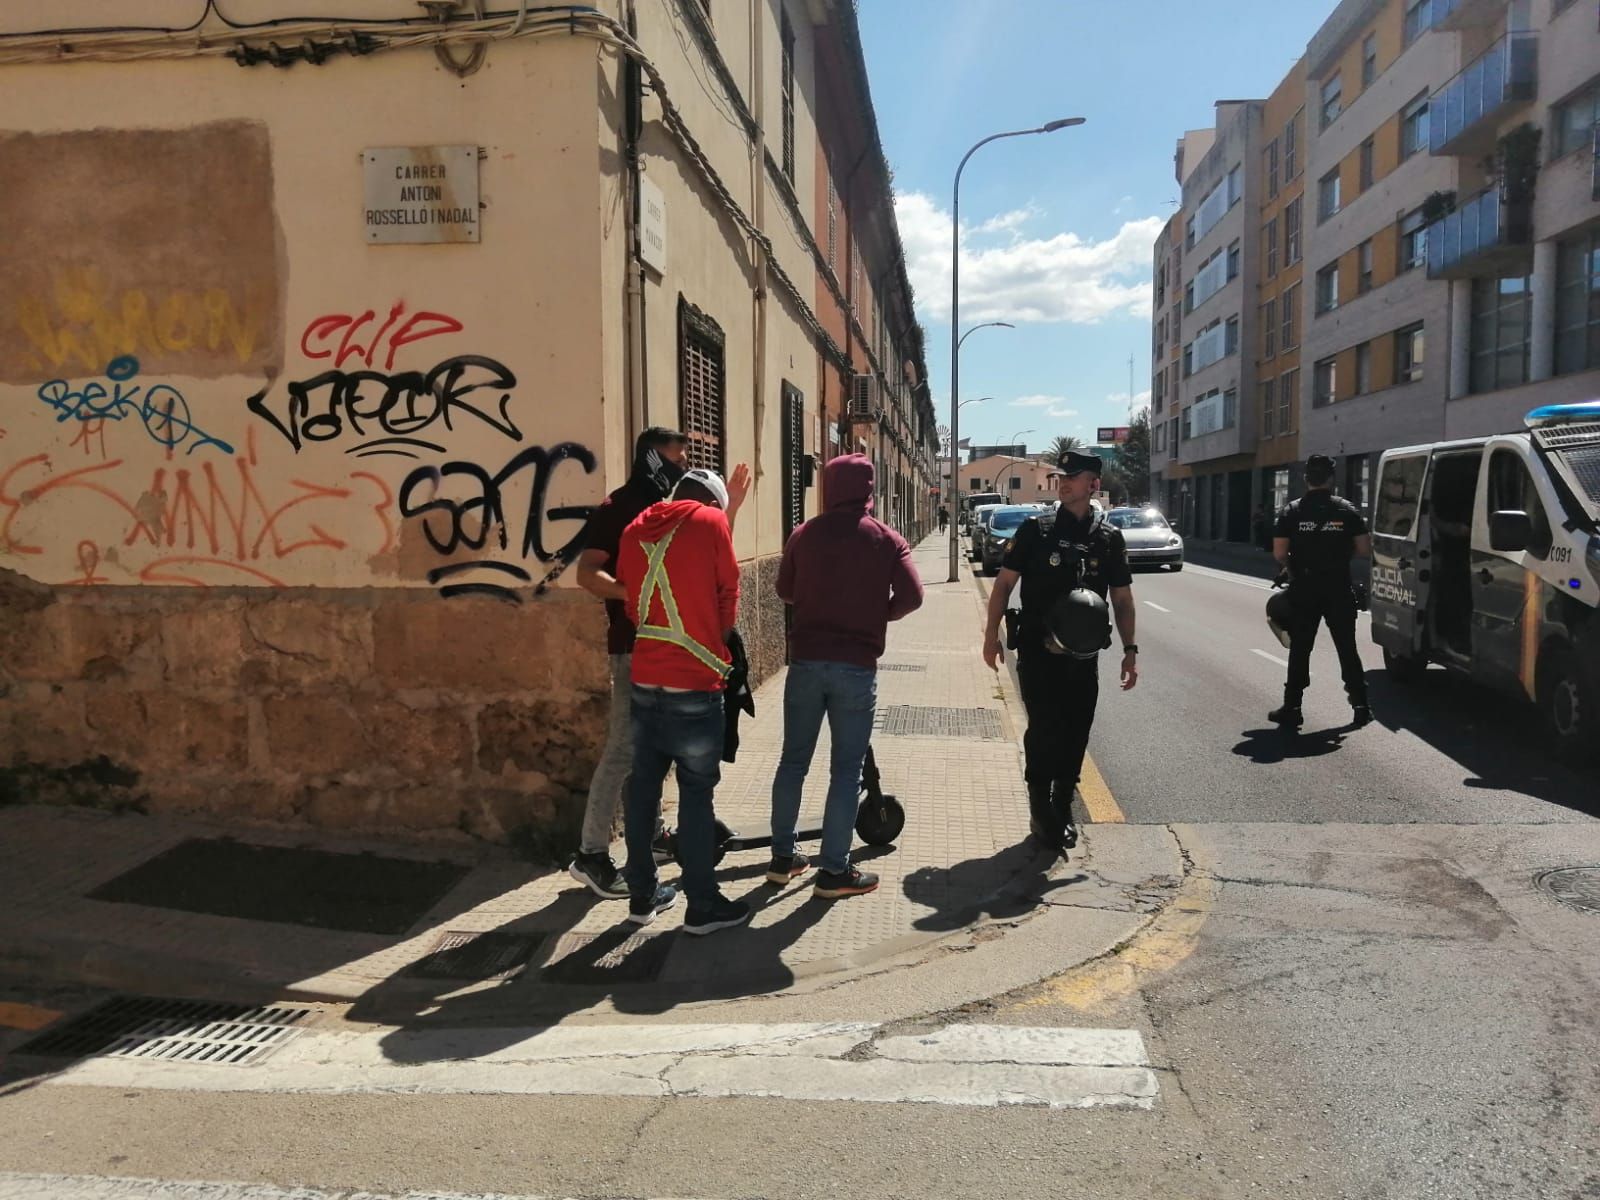 Nuevo golpe policial contra el clan del Pablo en La Soledat, en Palma